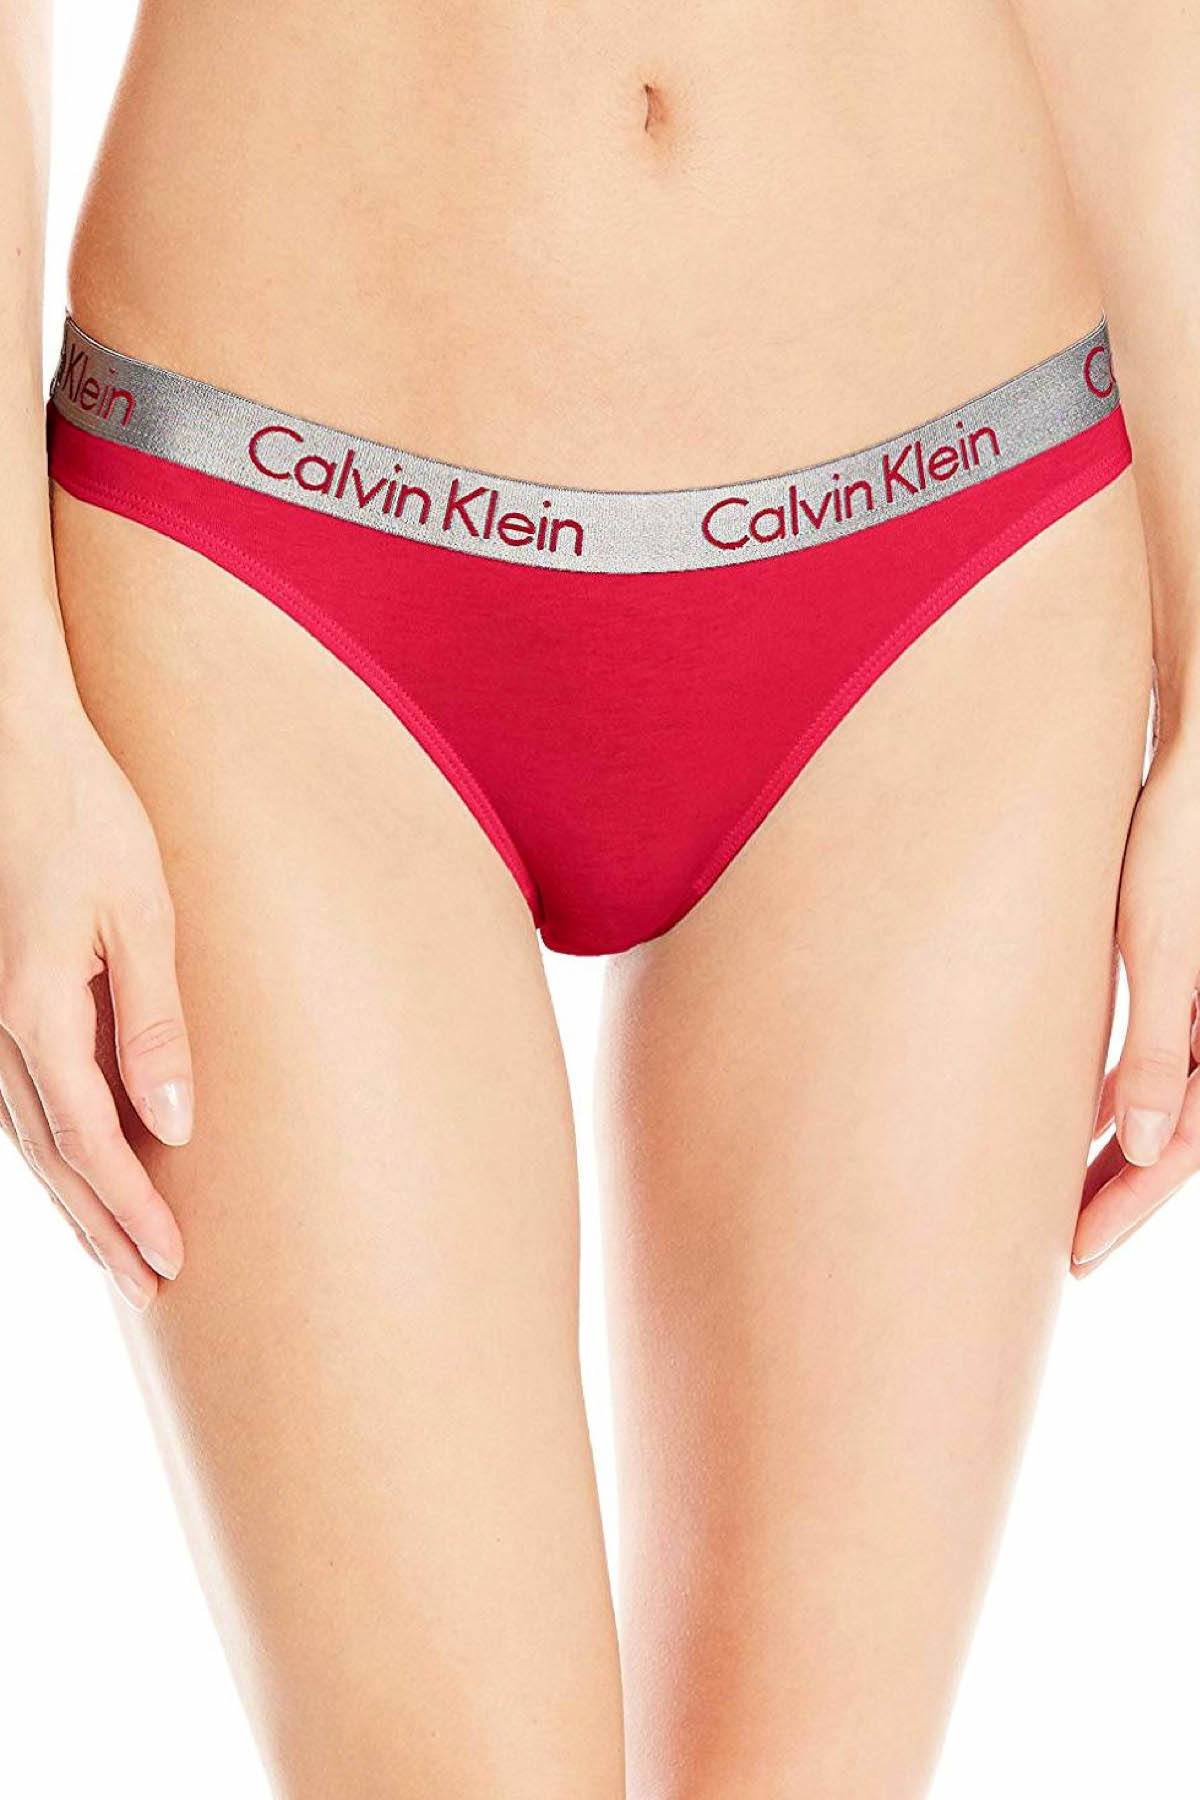 Calvin Klein Empower-Red Radiant Cotton Thong